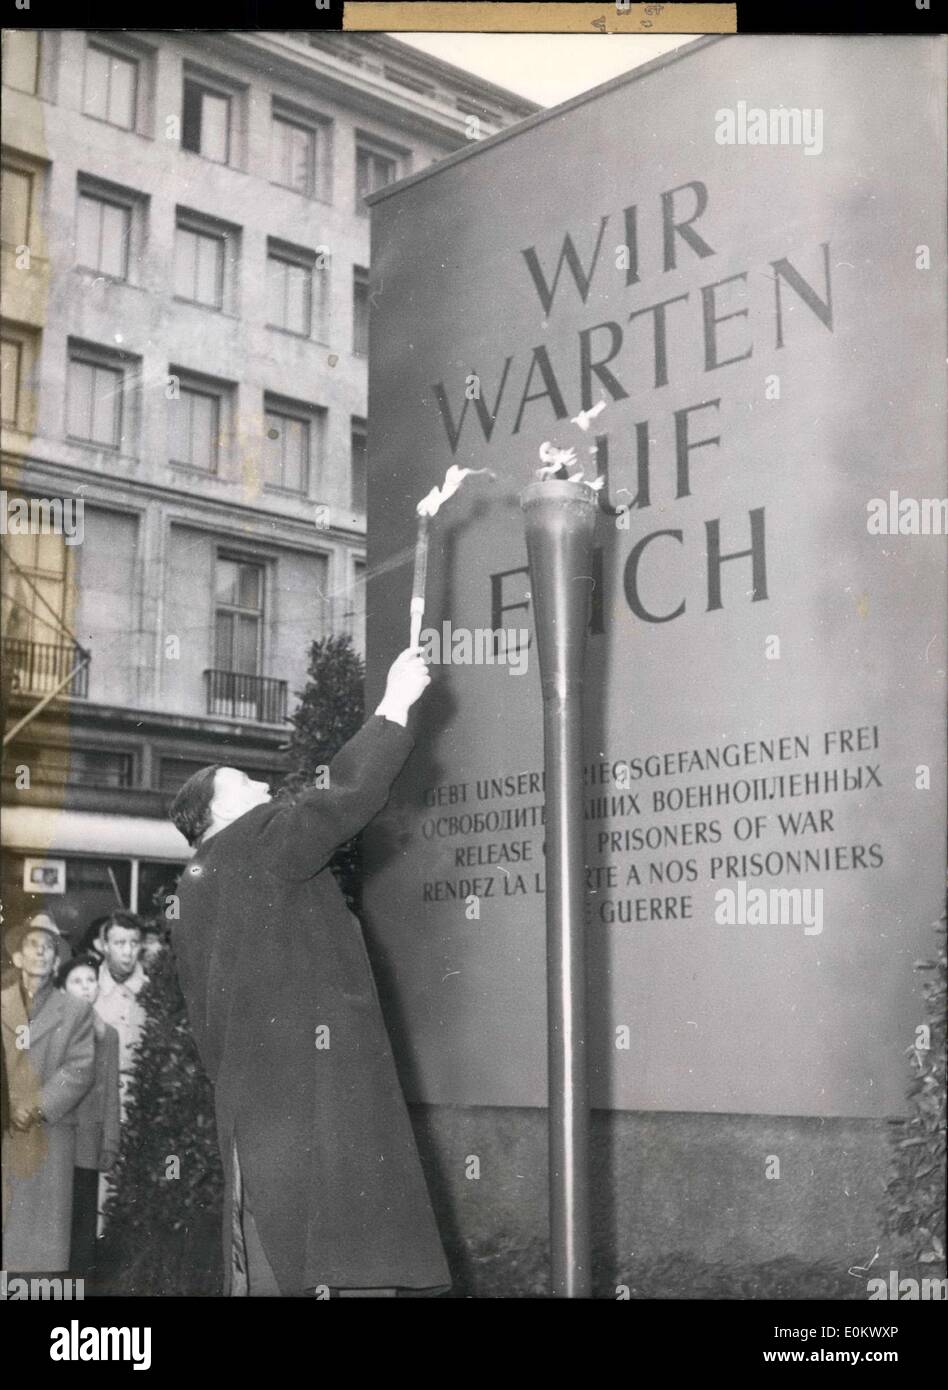 Enero 05, 1952 - Memorial en D?sseldorf. Un monumento fue erigido en D?sseldorf's Alleestrasse para siempre recordar la liberación de los prisioneros de guerra. Alcalde Gockeln enciende la llama eterna del memorial. Foto de stock